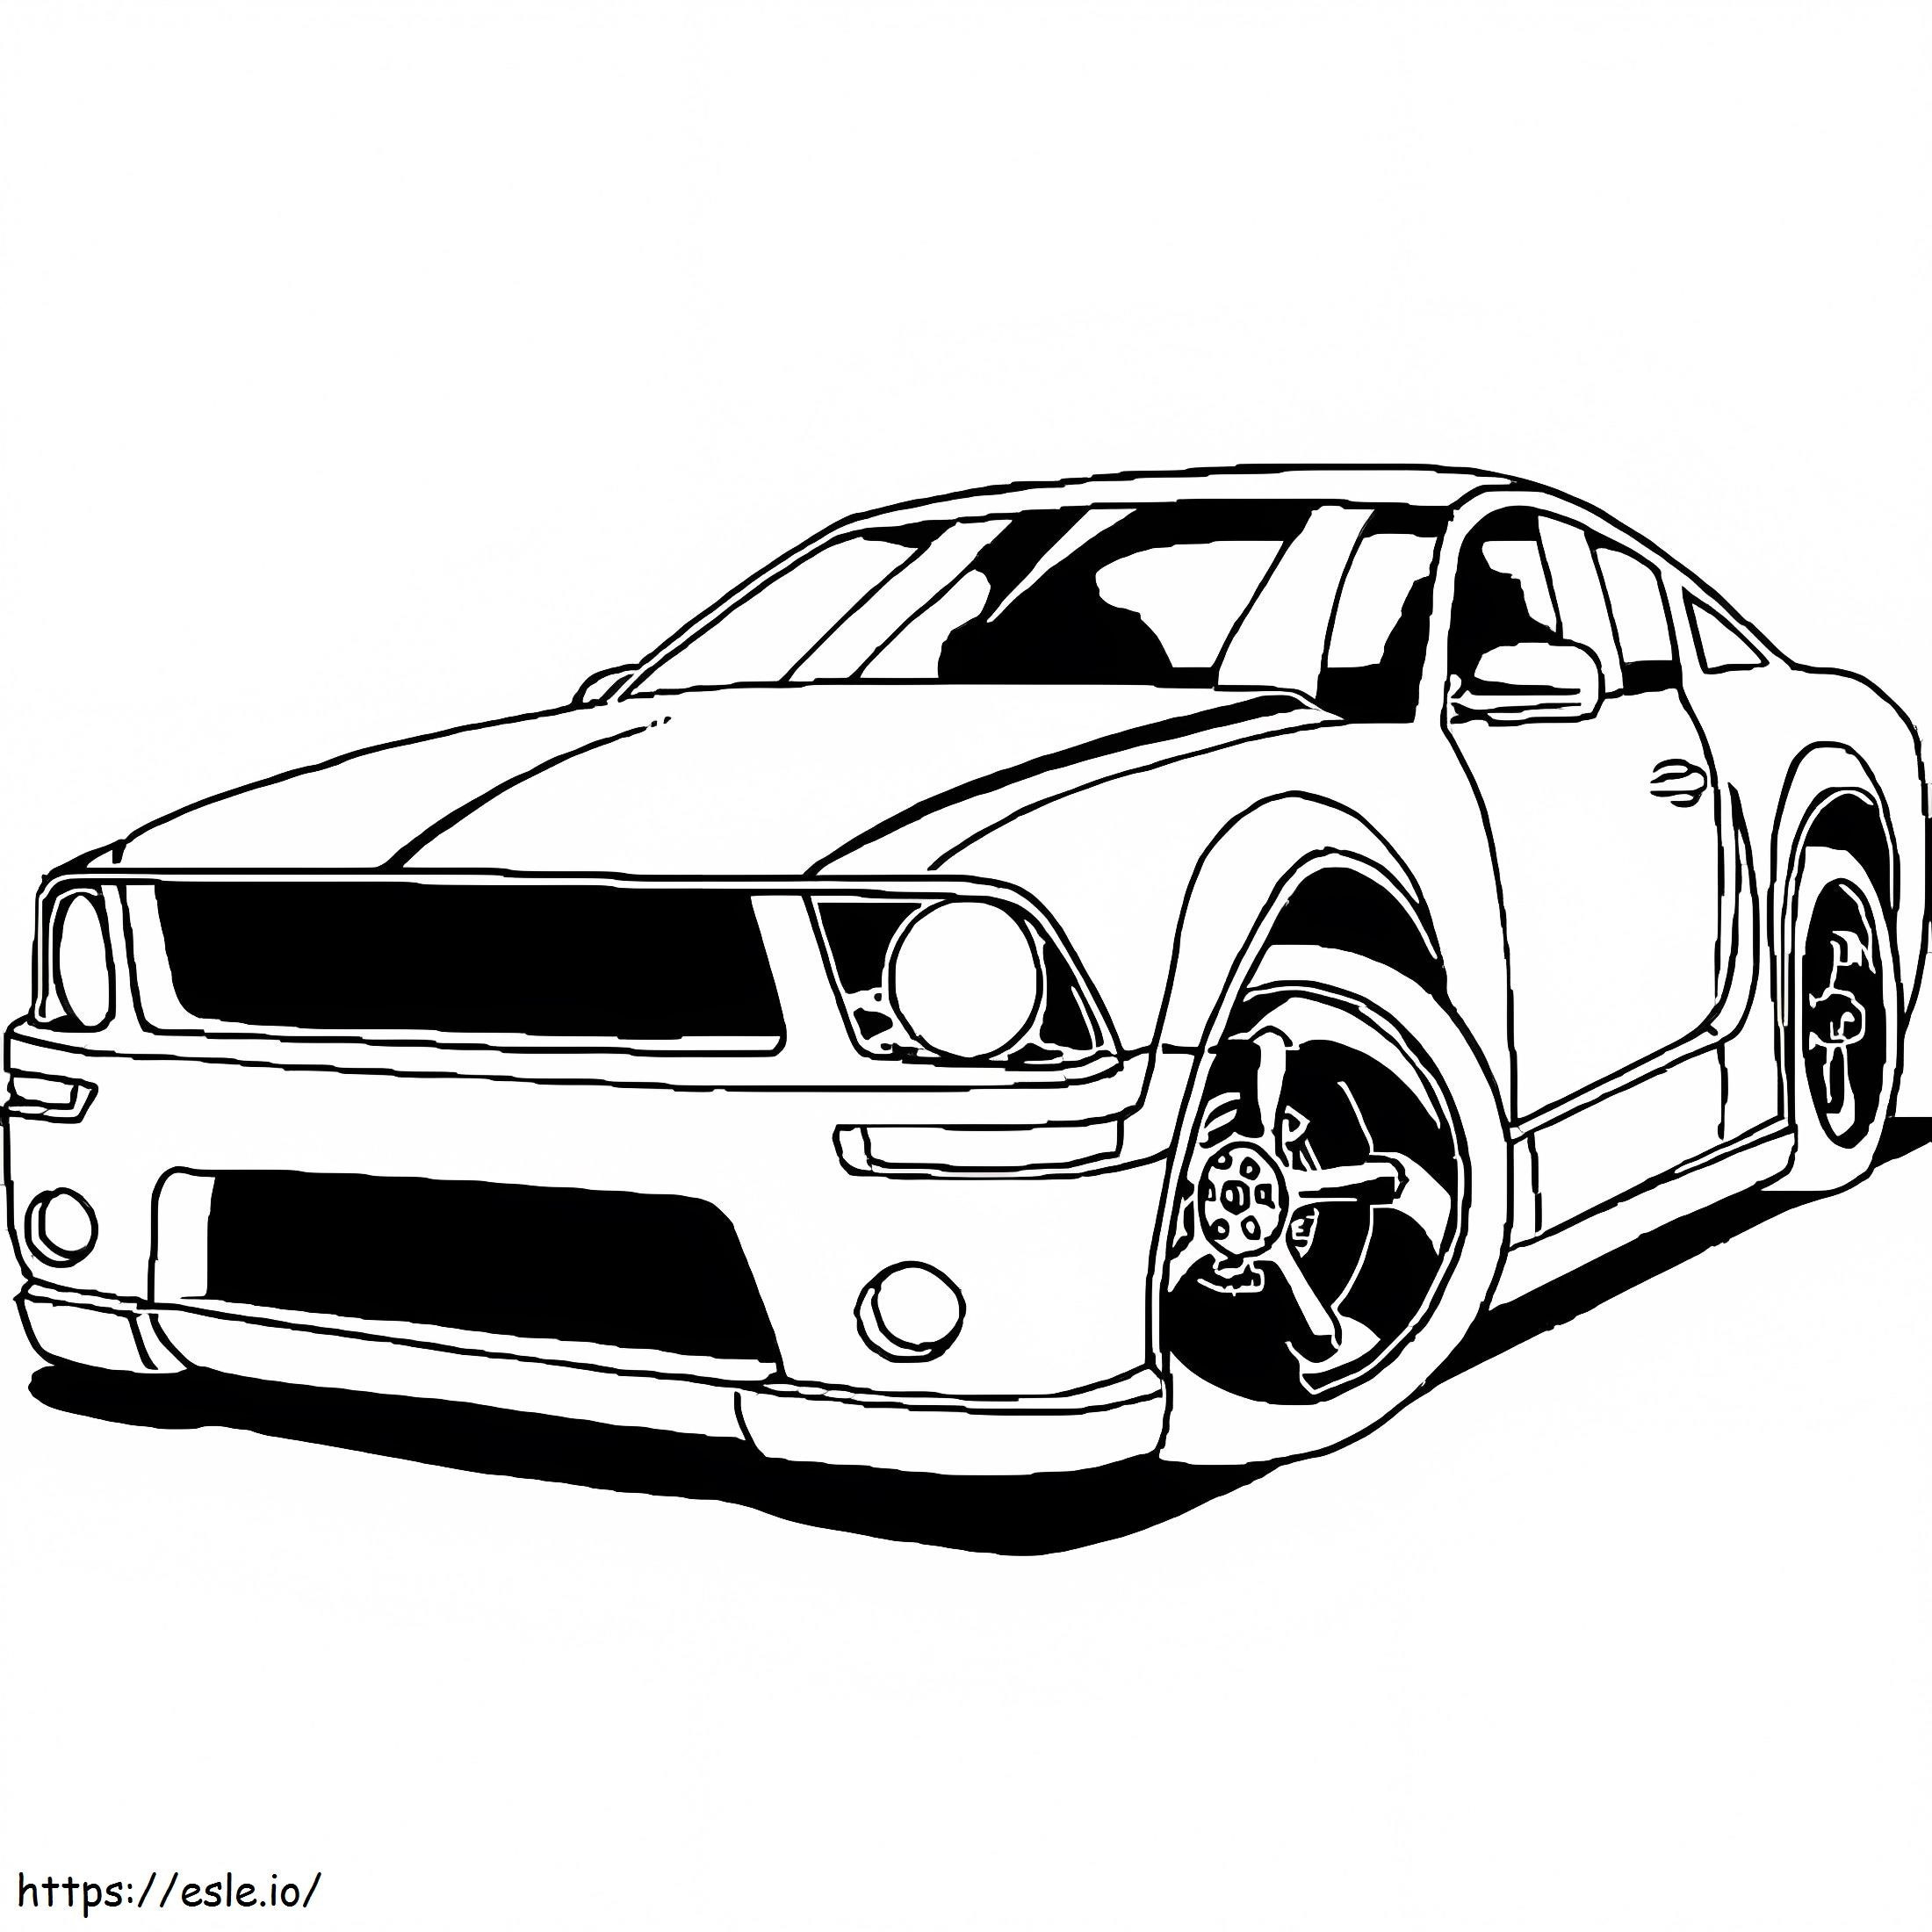 Carro Mustang legal para colorir